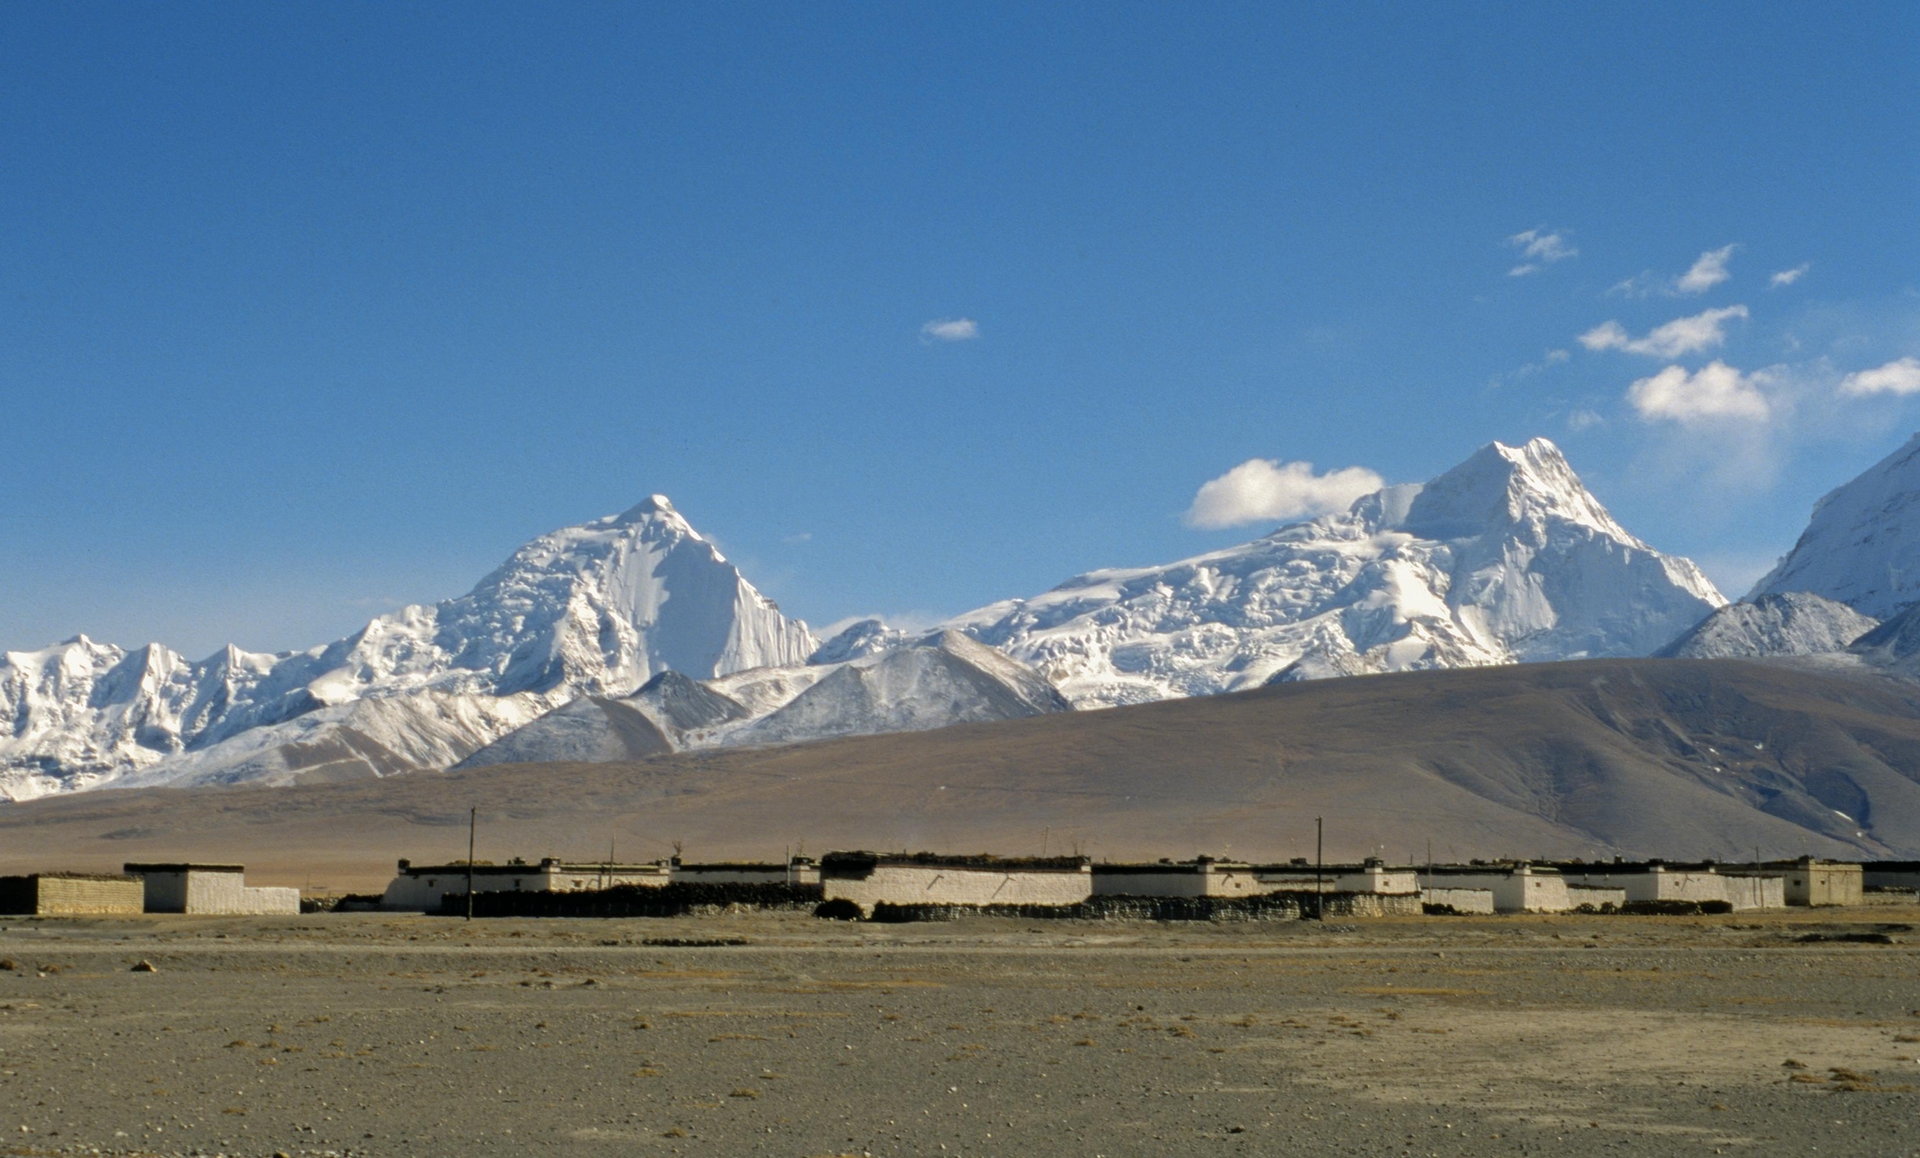 車子往南爬升接近帕里時，左邊已經看到雄偉壯麗的喜馬拉雅名山綽莫拉日群峰的身影了。